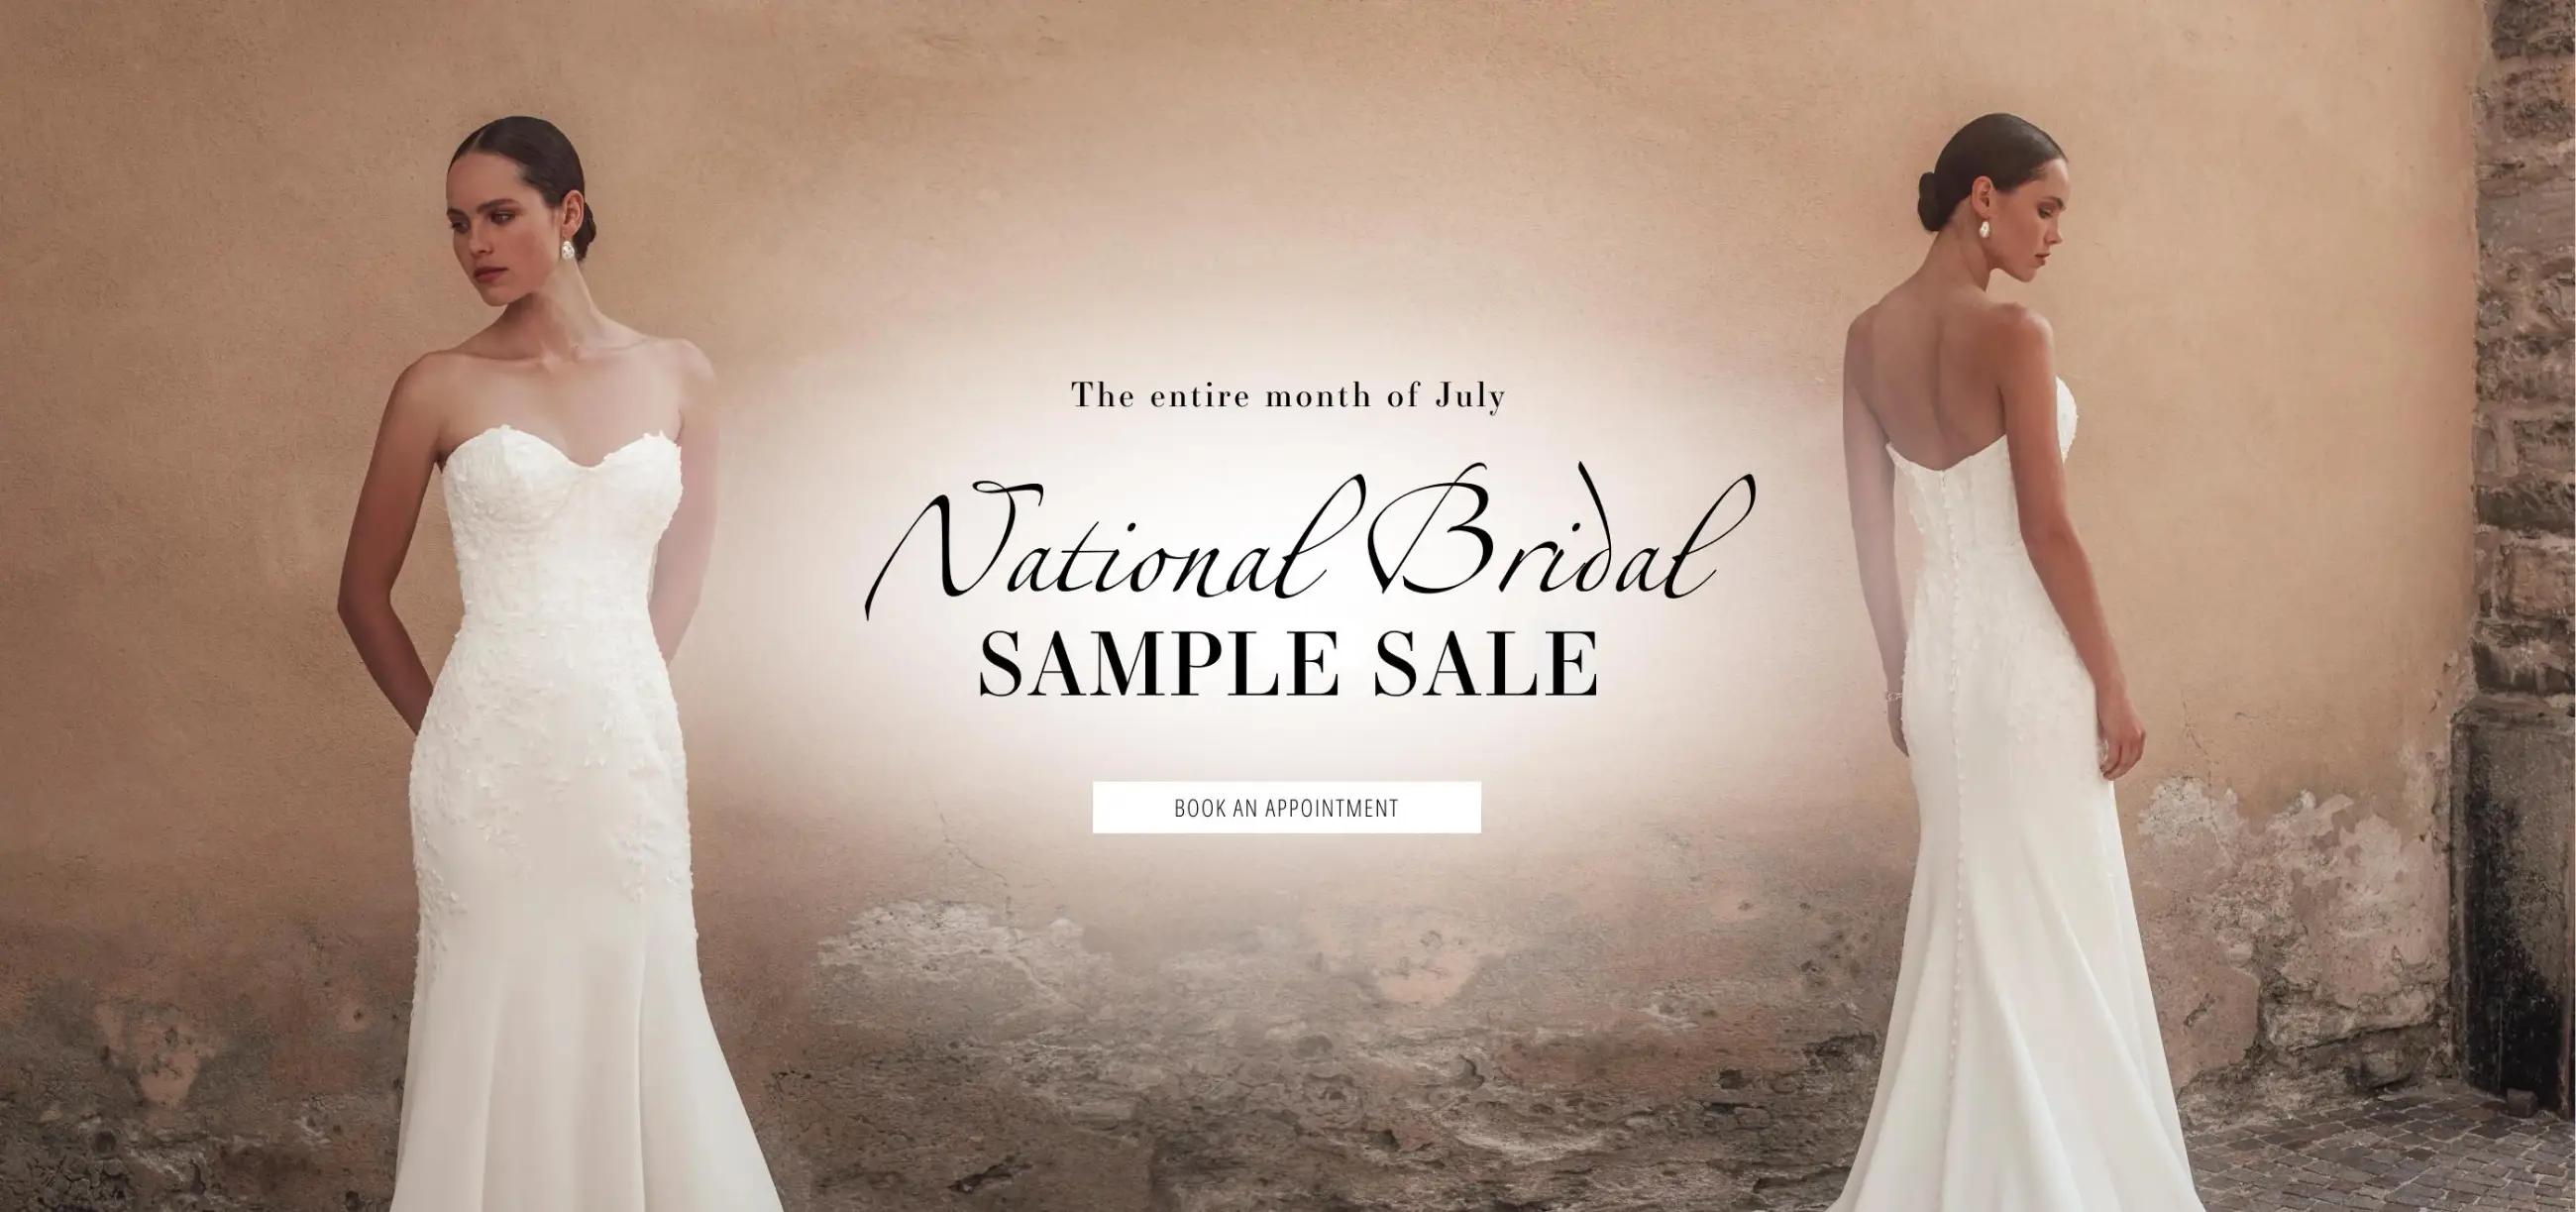 National Bridal Sample Sale Desktop Banner